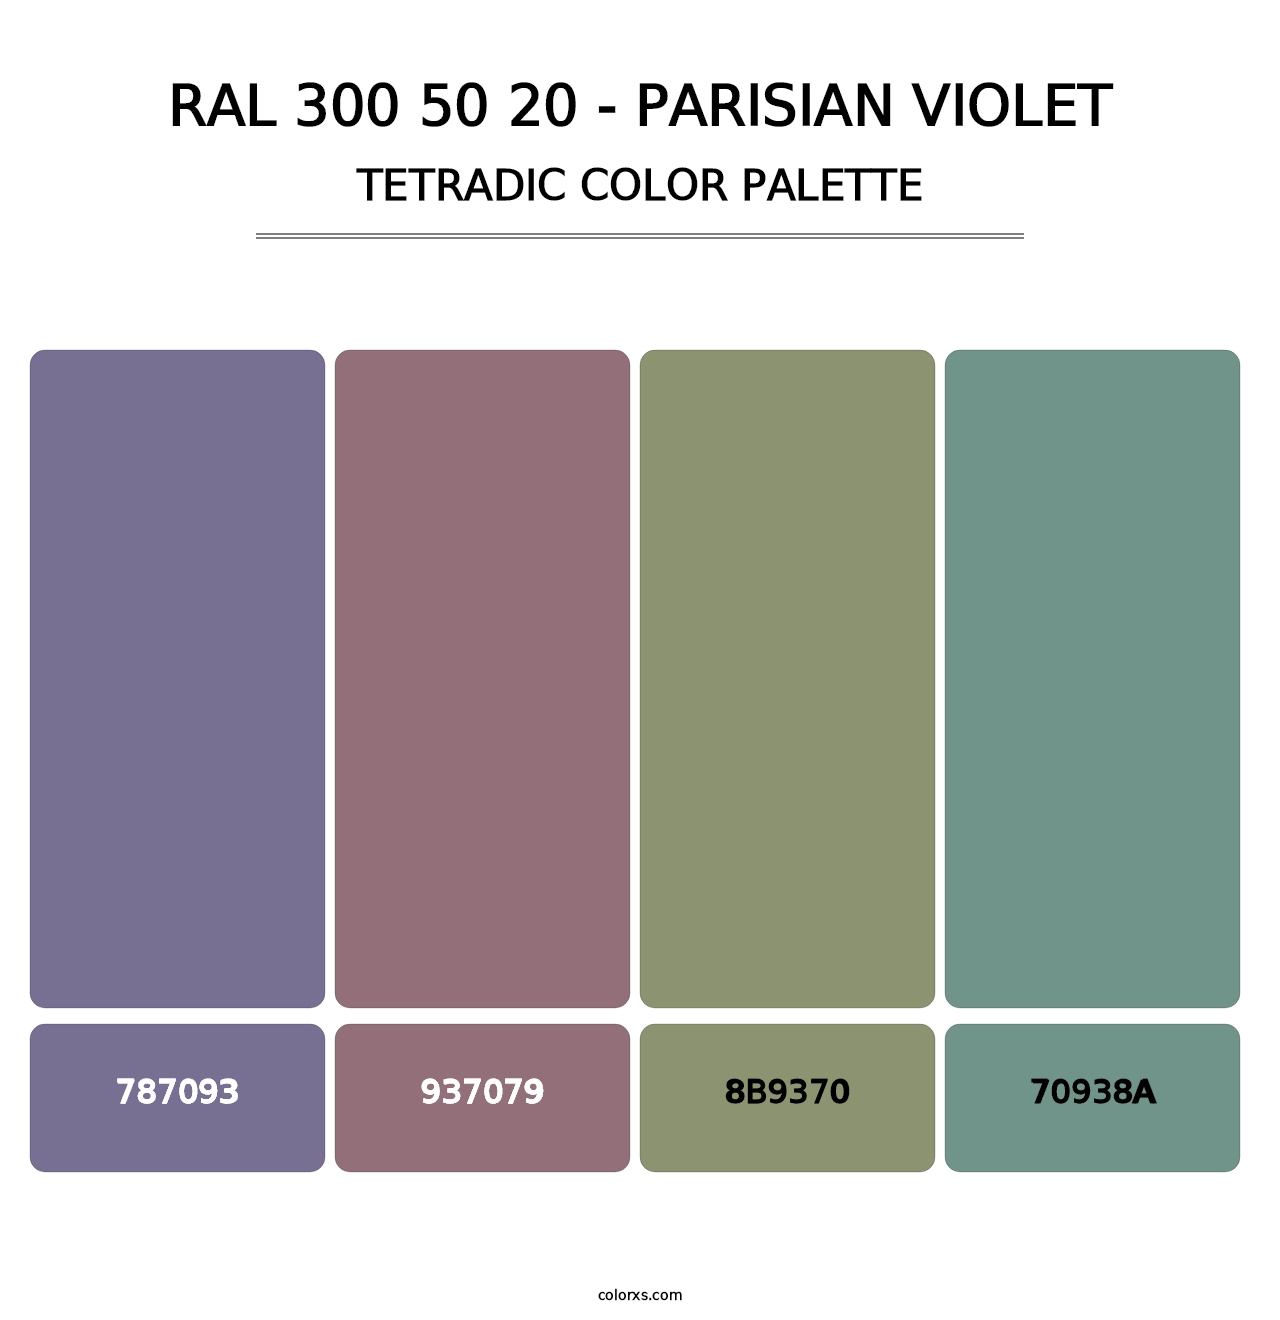 RAL 300 50 20 - Parisian Violet - Tetradic Color Palette